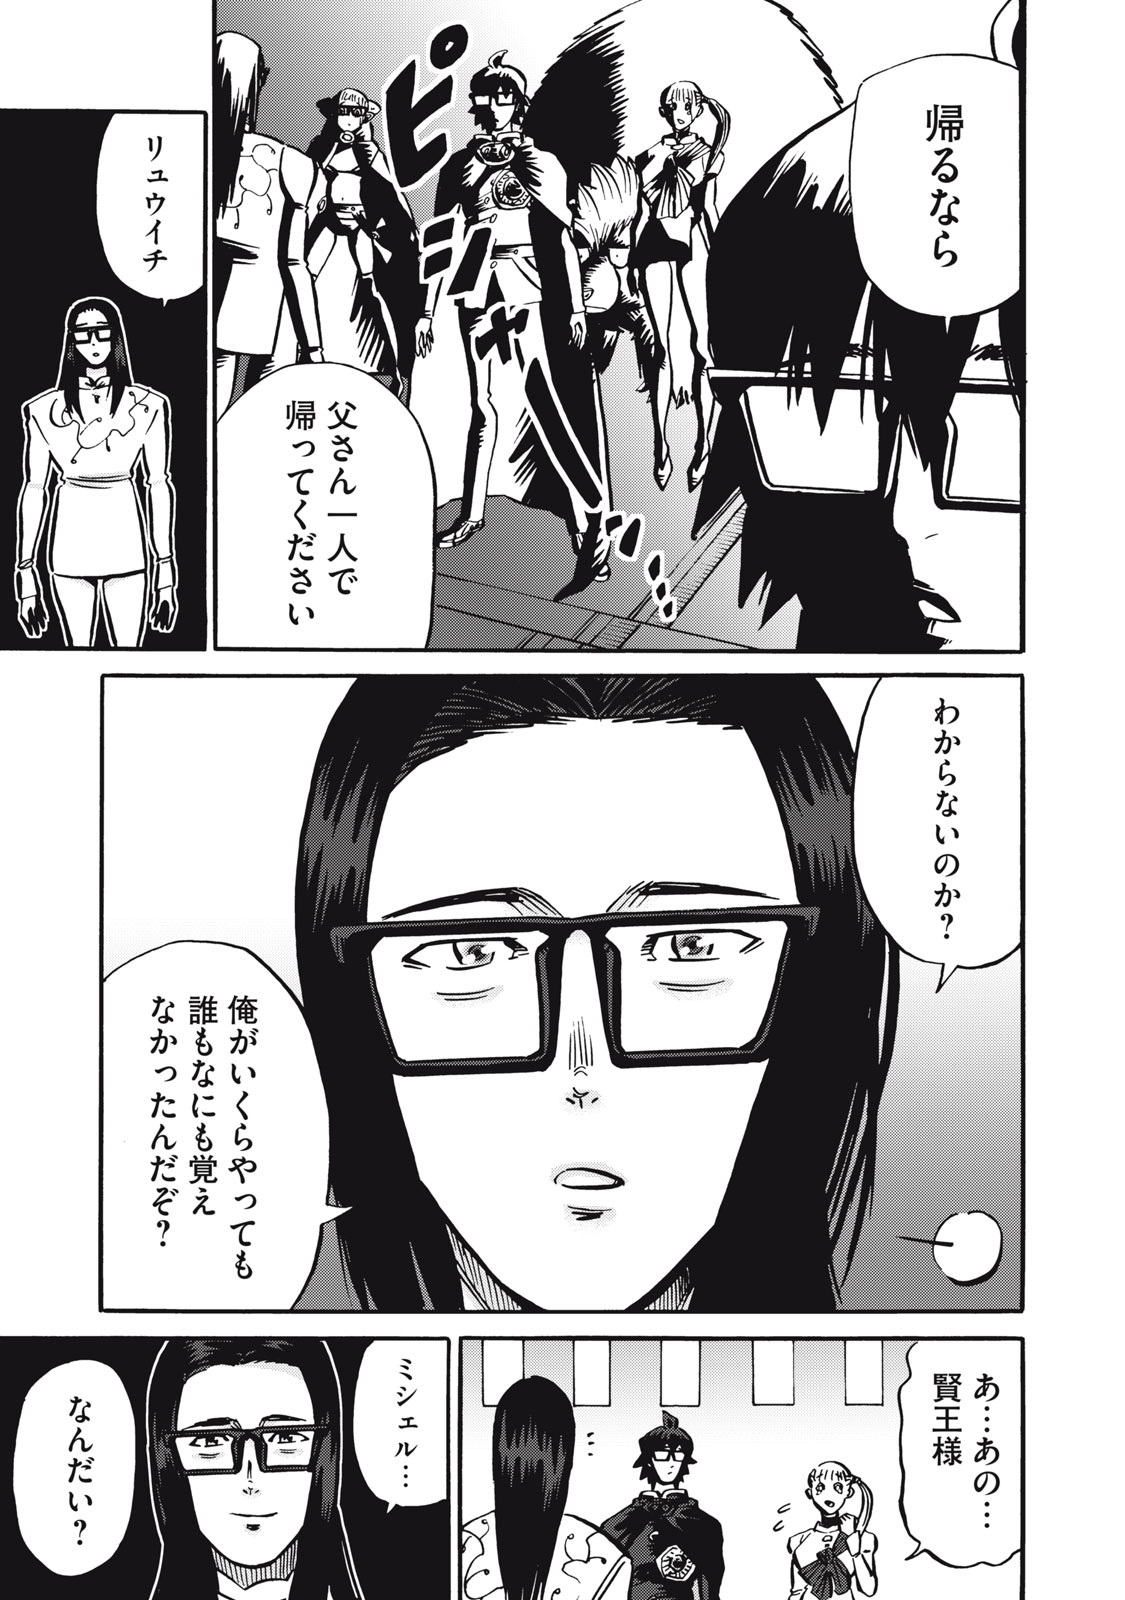 Hensochi 10 No Ore Ga Isekai De Chie No Yuusha Ni Nareta Wake - Chapter 35 - Page 1